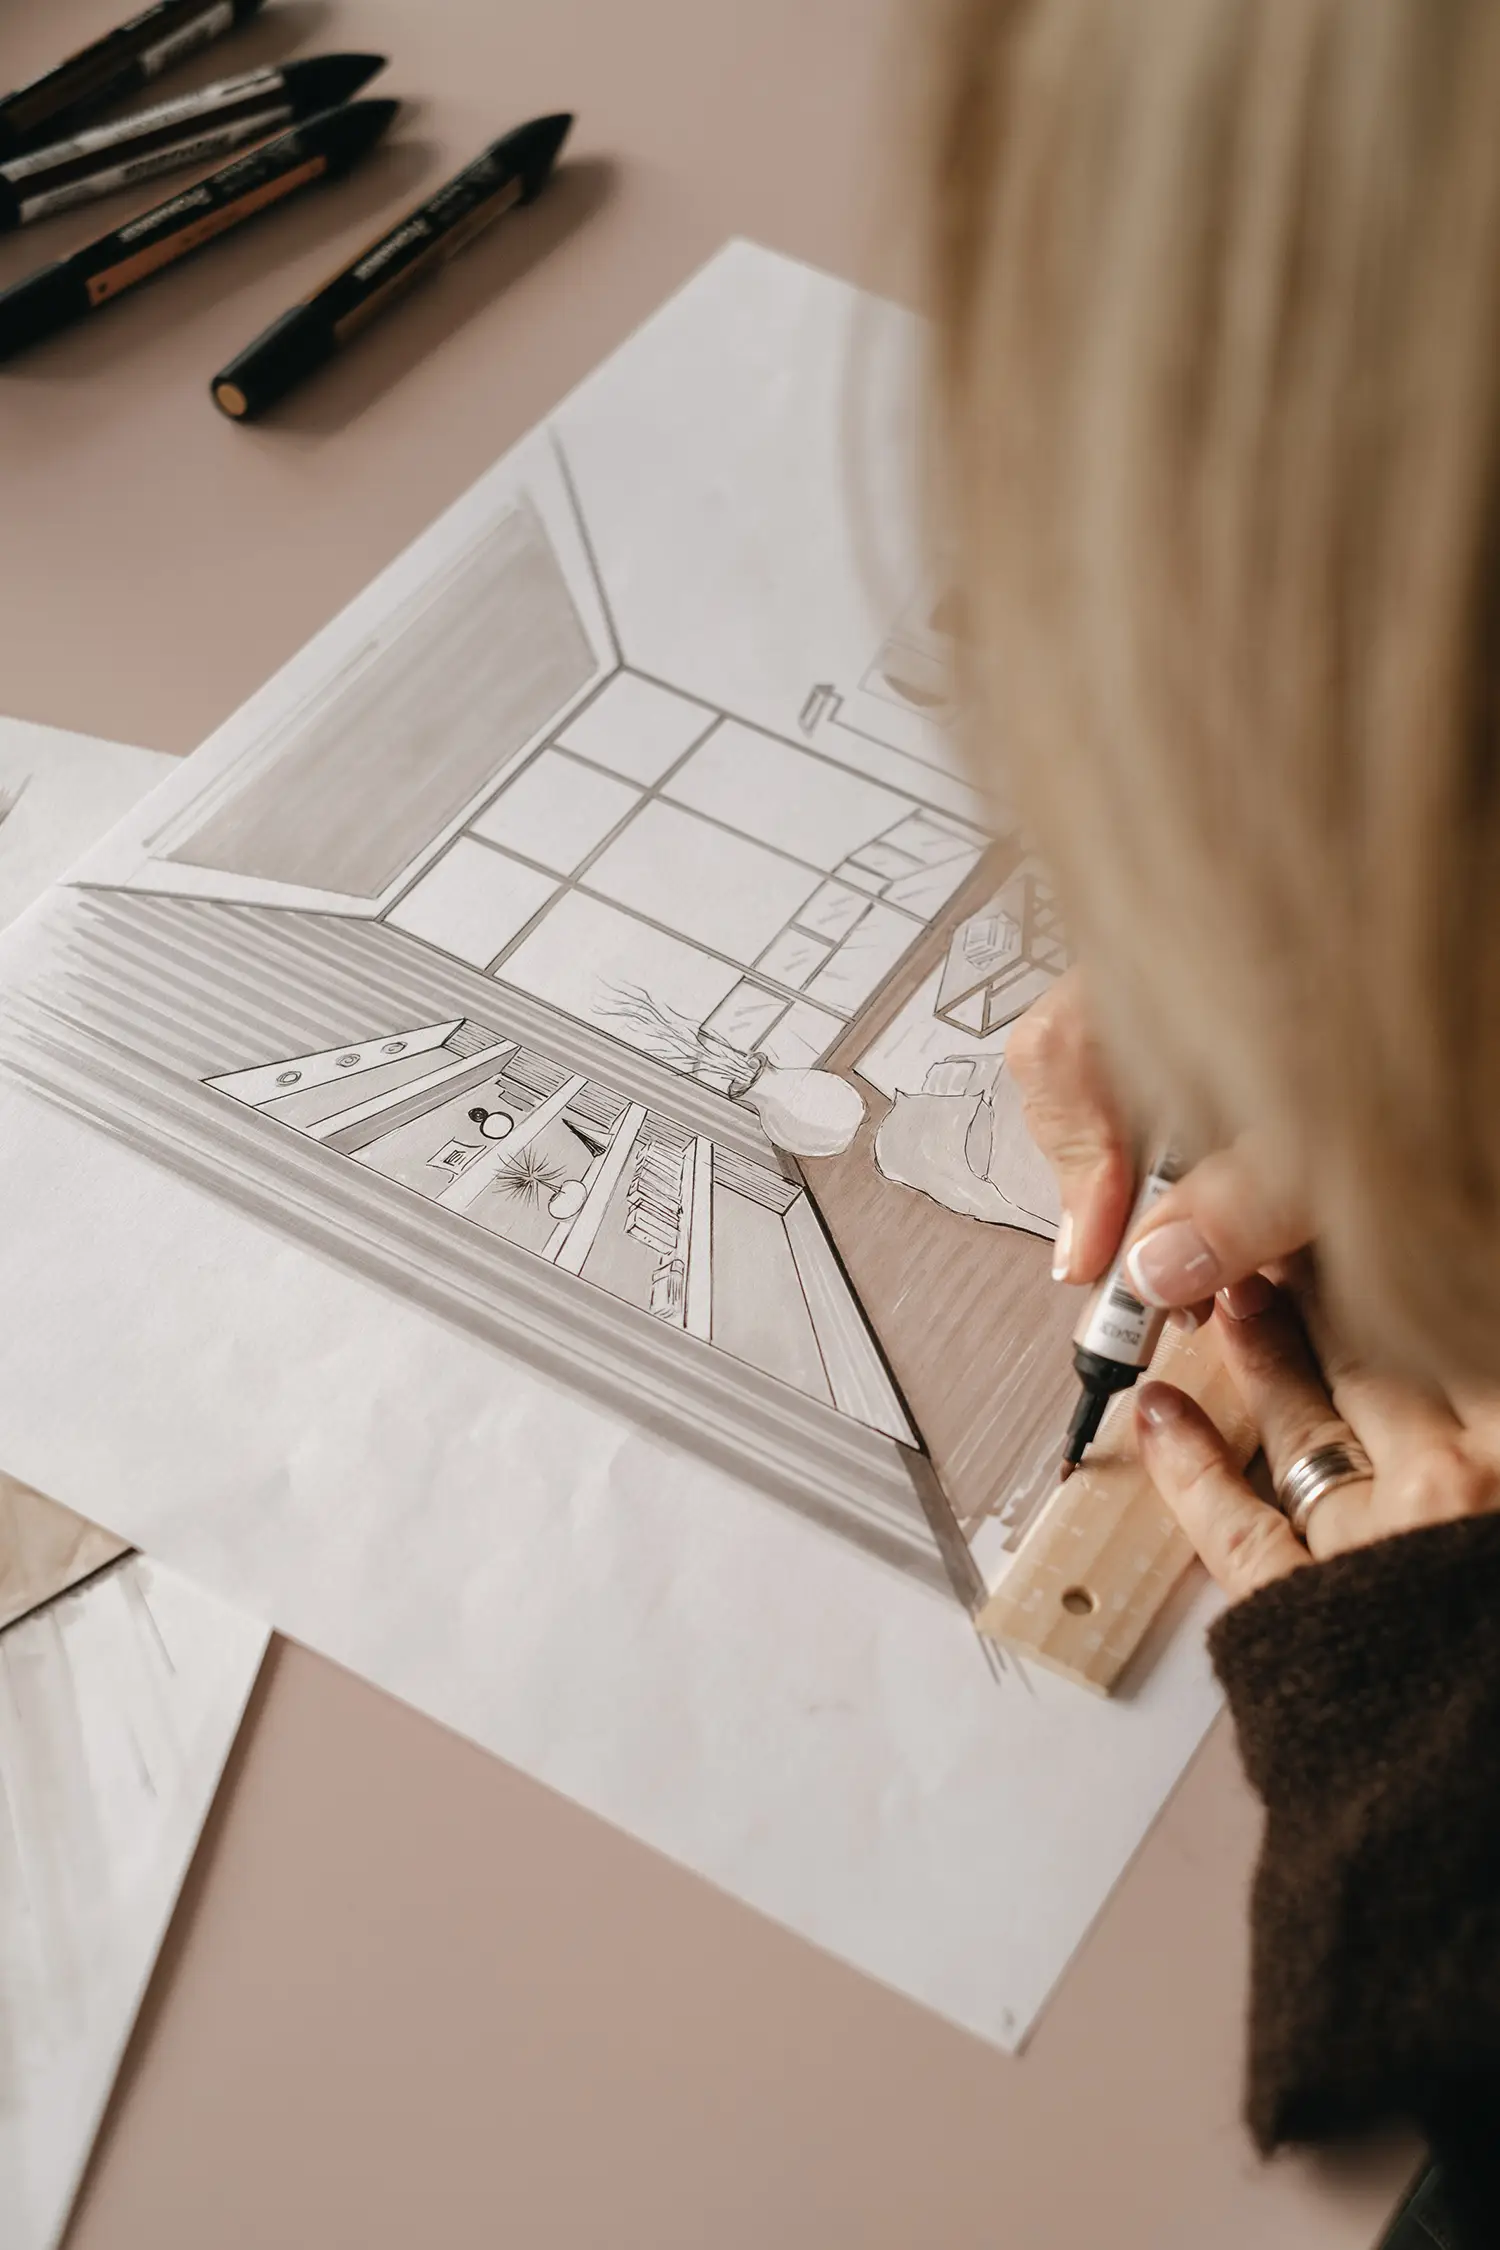 La progettista di interni Stefania Luraghi, fondatrice dello studio Elles Interior Design, mentre lavora al disegno tecnico di un progetto di ristrutturazione.